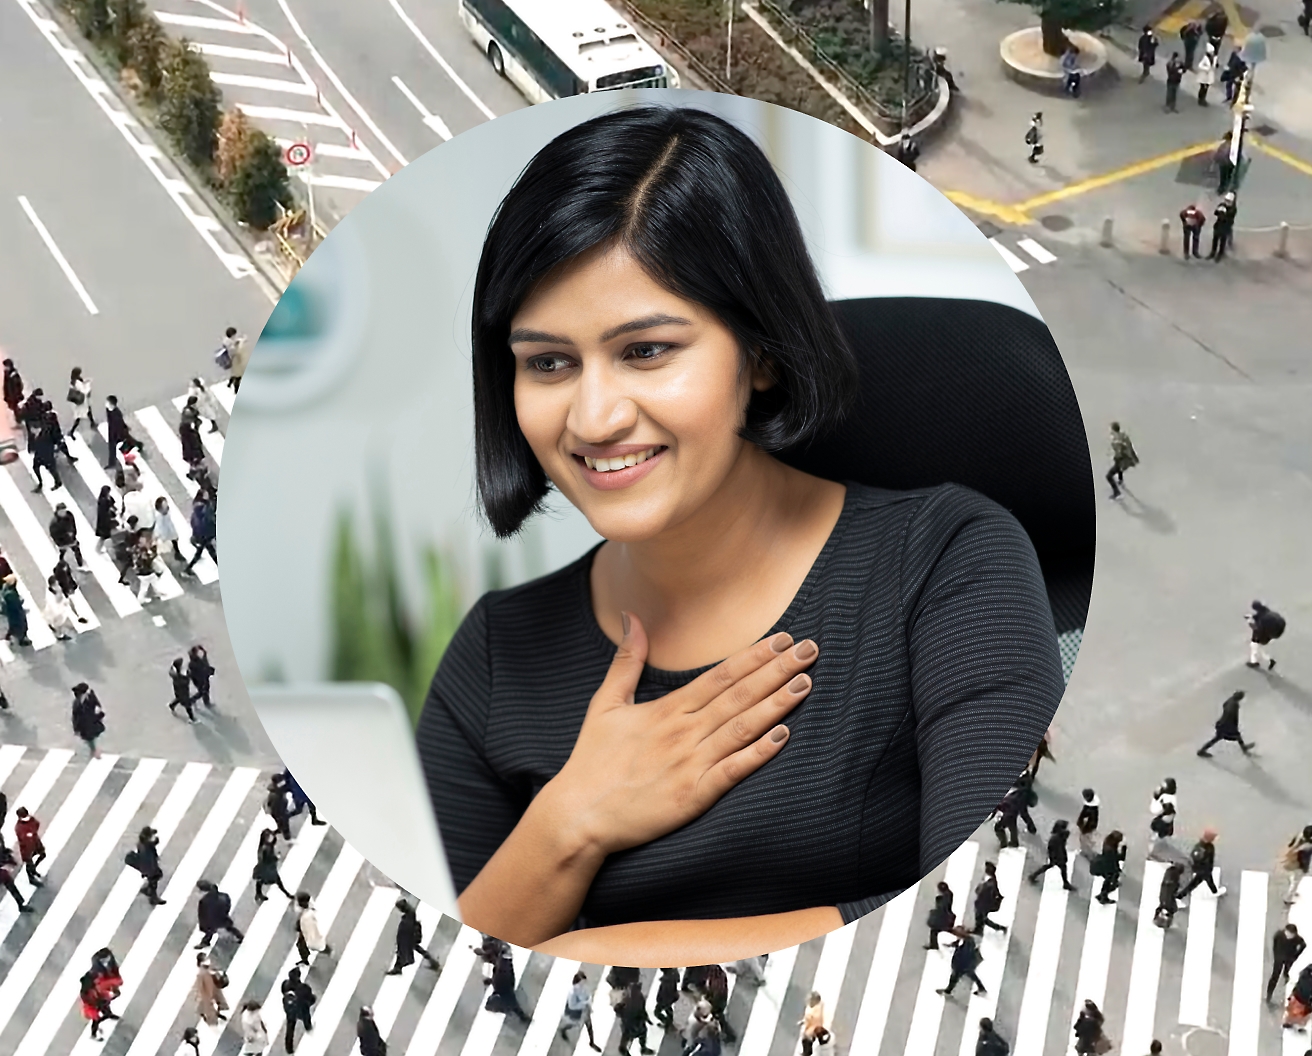 노트북으로 작업하는 동안 가슴에 손을 얹고 있는 여성, 배경 이미지는 사람들이 지나가는 도로 교차로로 설정